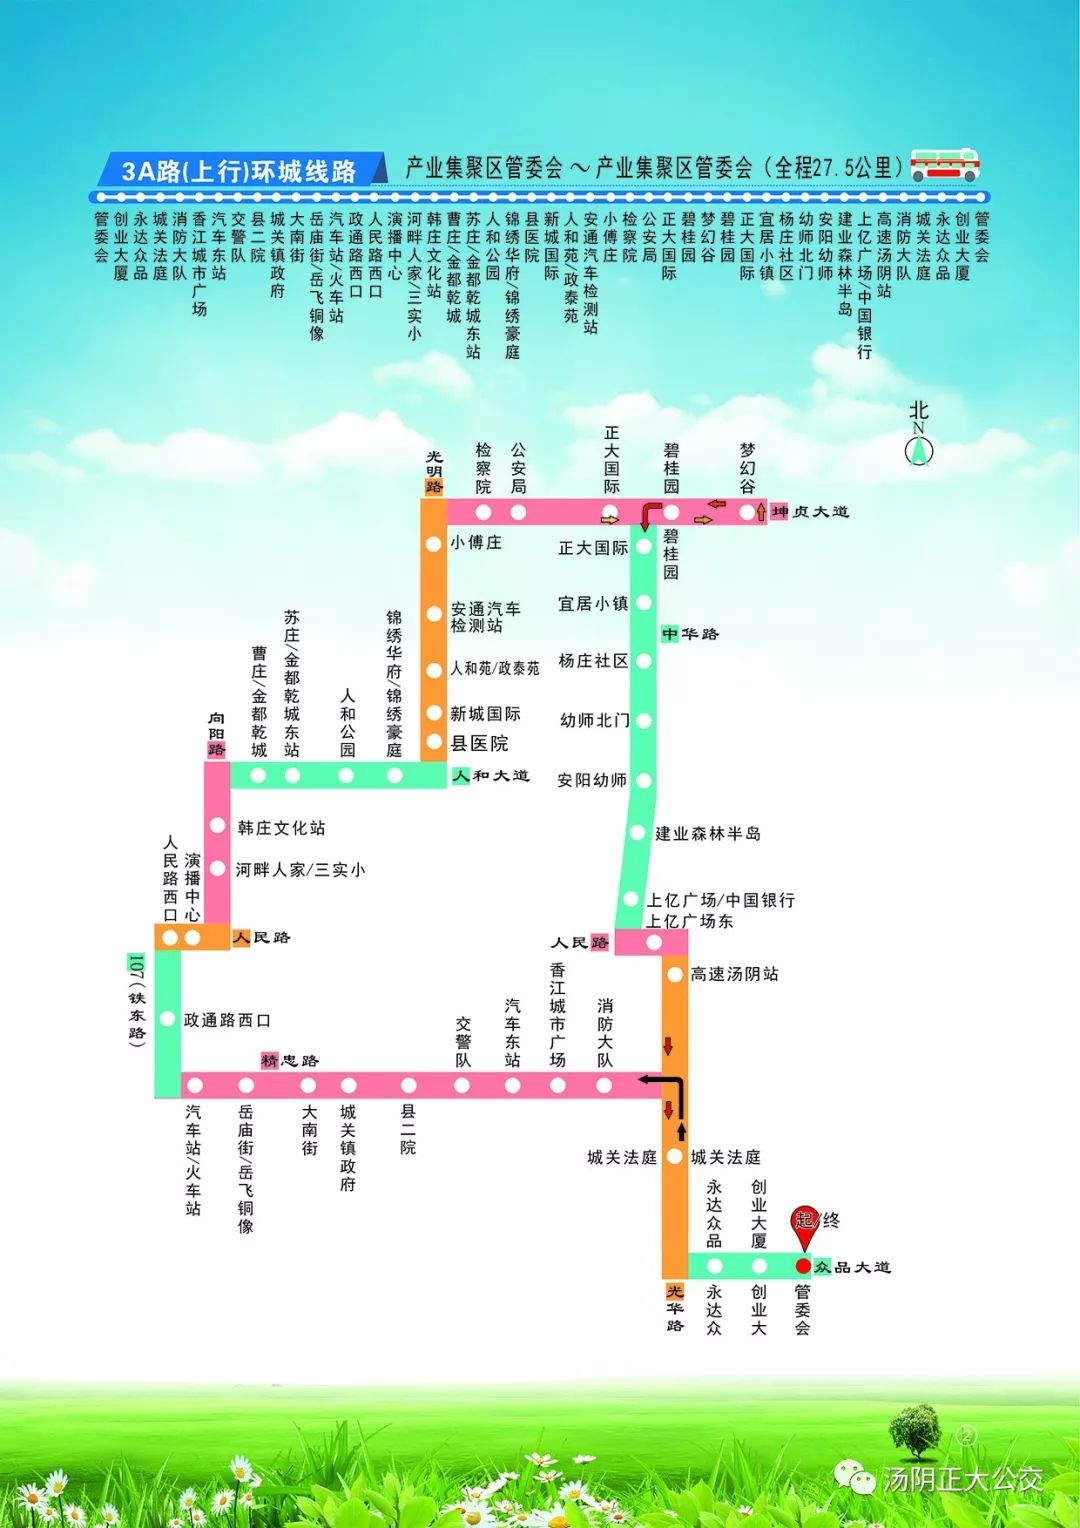 【收藏】汤阴公交线路图,再也不怕找不到路了!